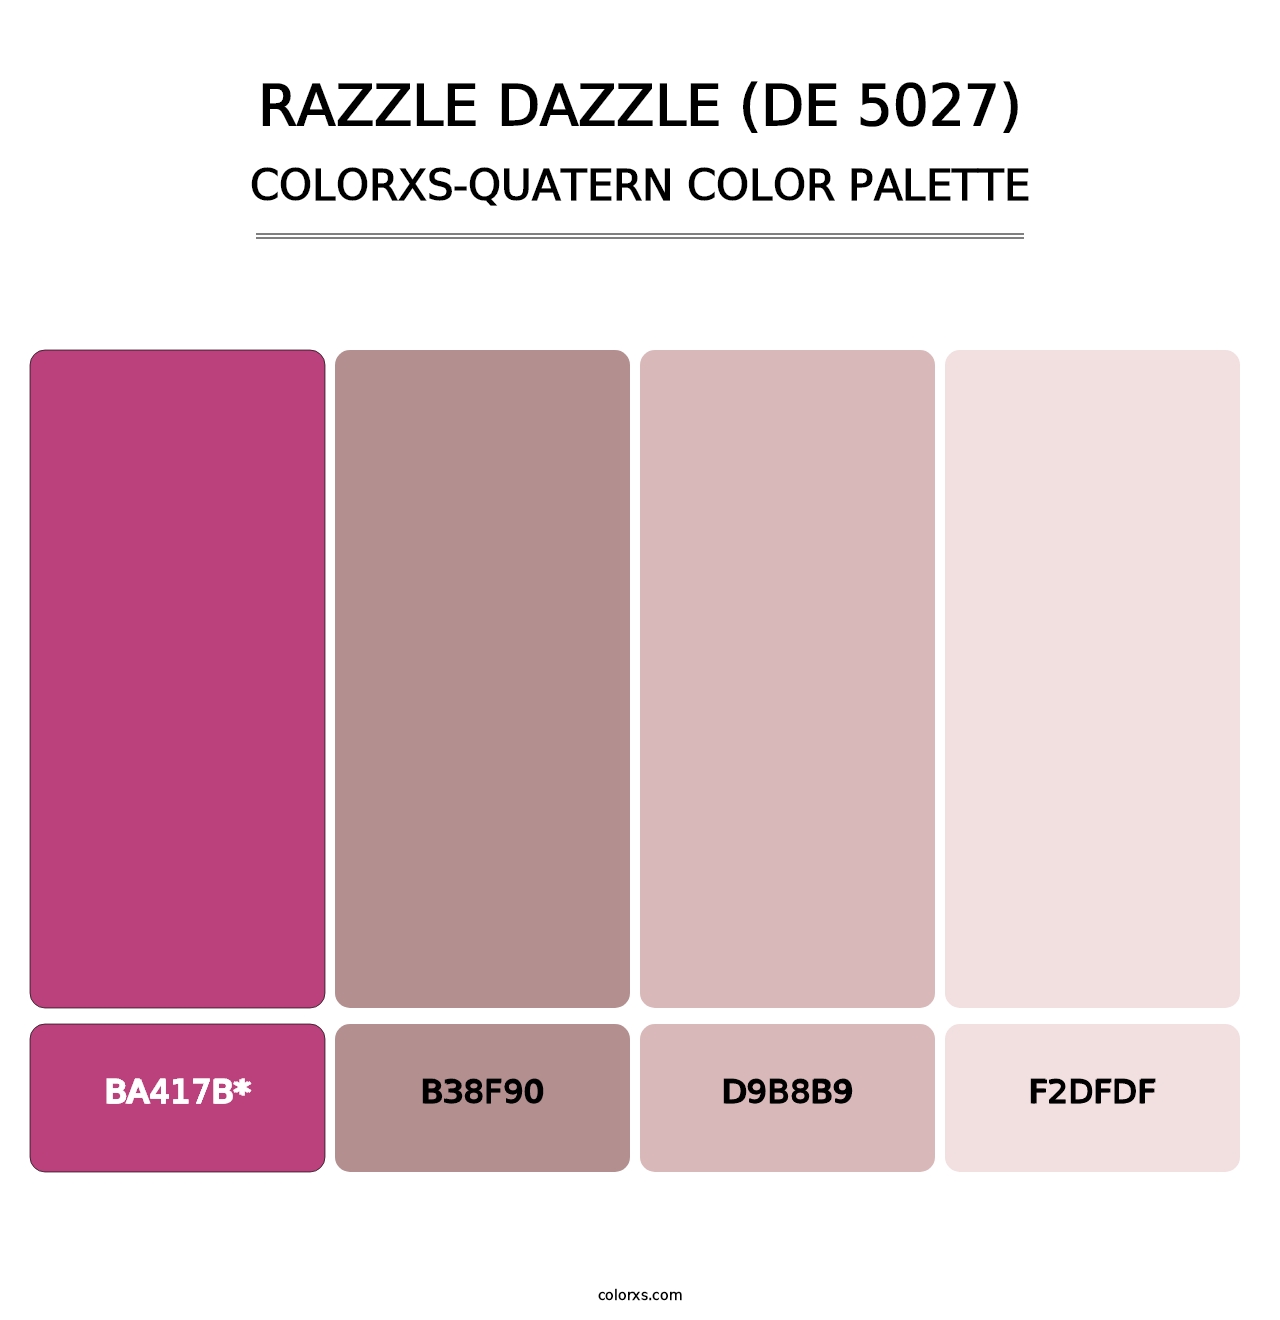 Razzle Dazzle (DE 5027) - Colorxs Quatern Palette